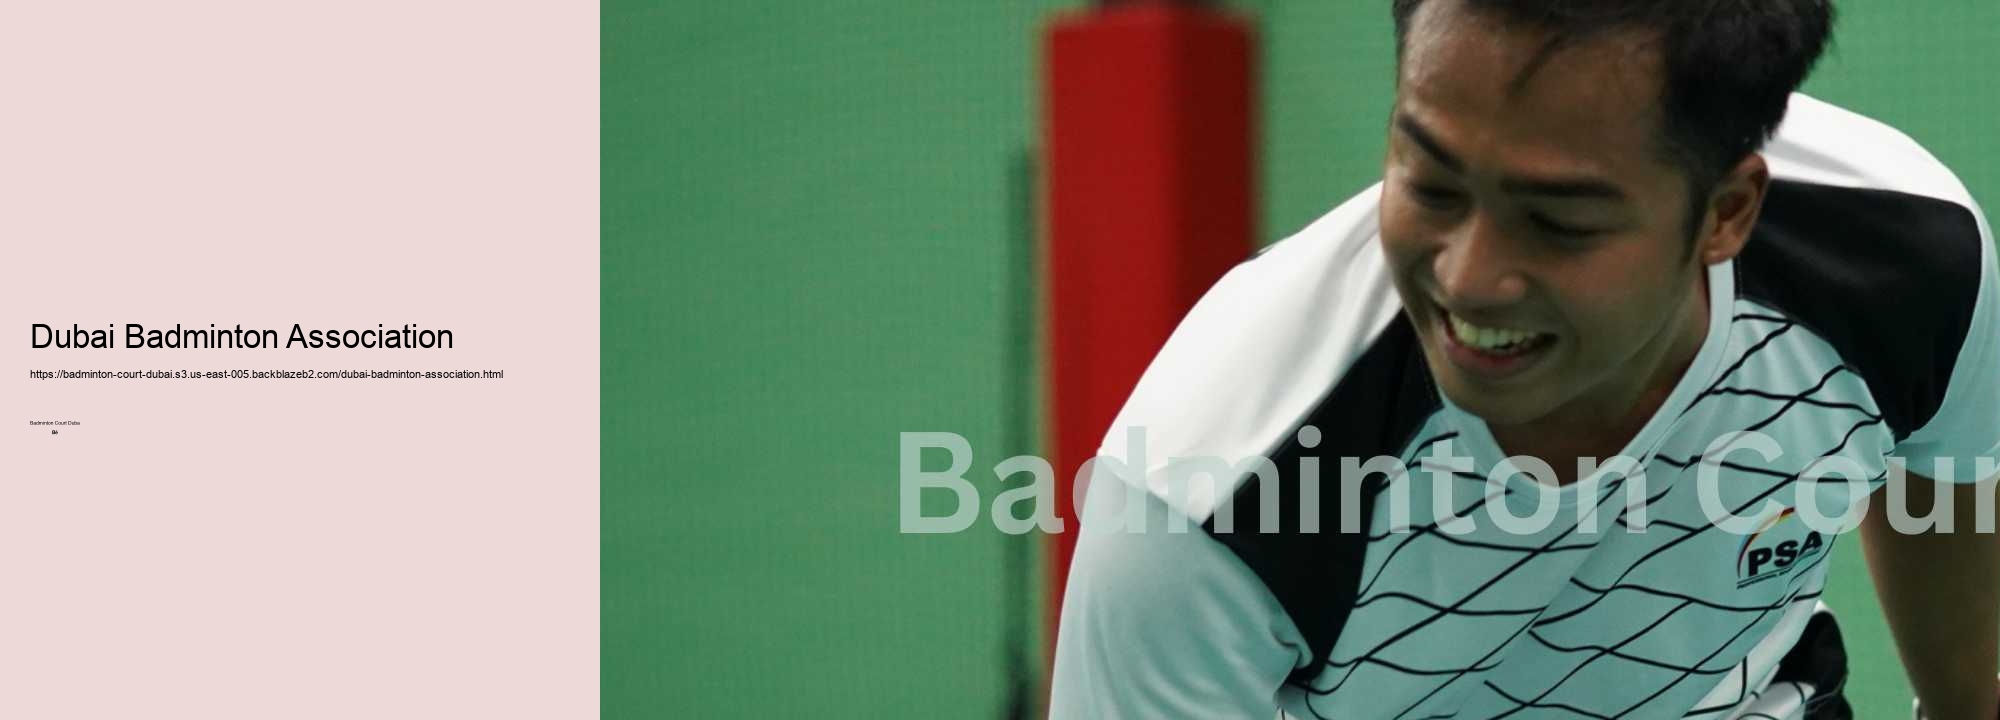 Dubai Badminton Association